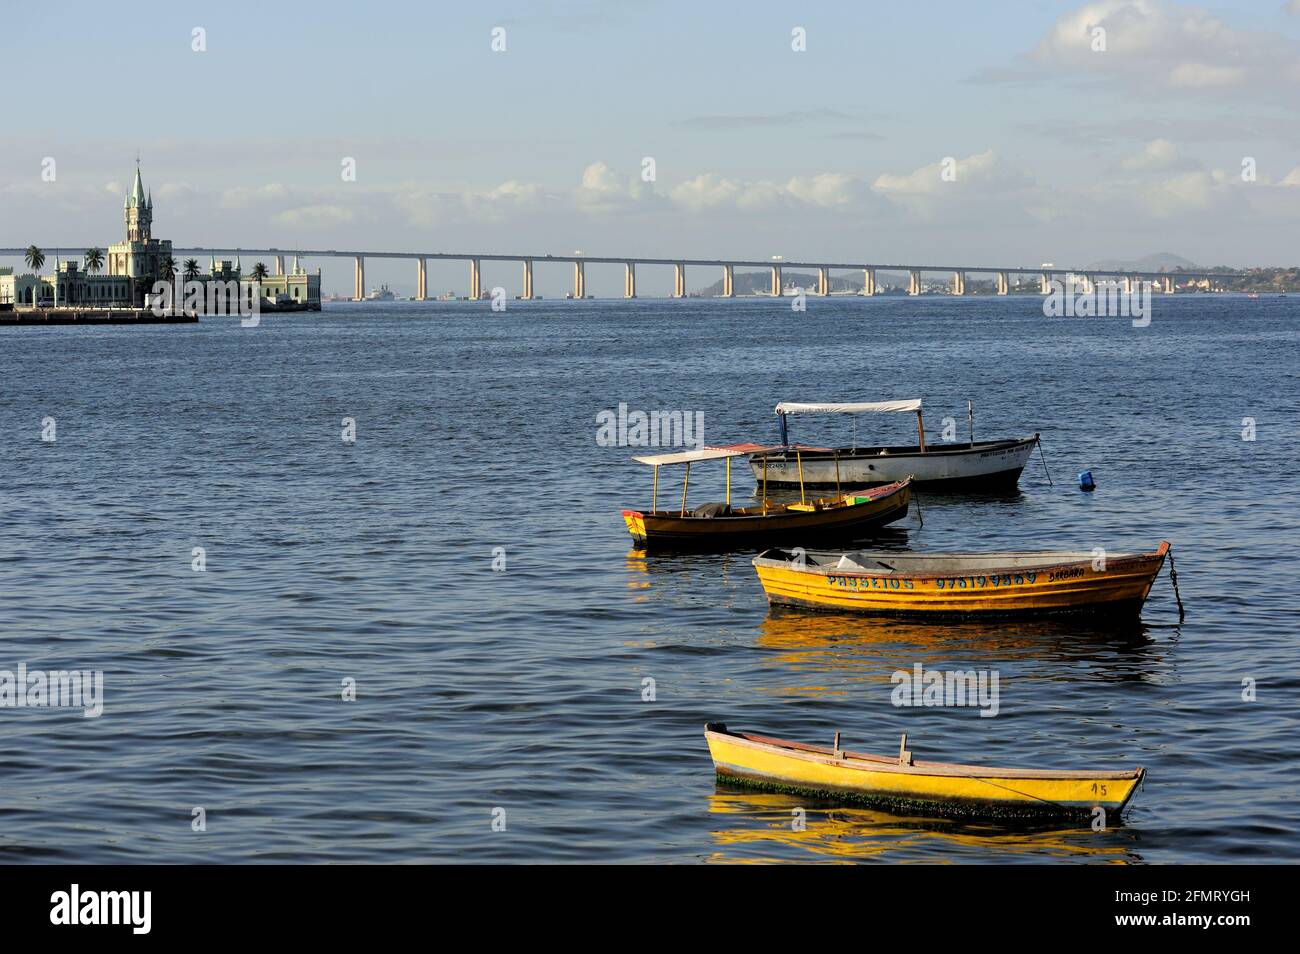 Brésil – 12 août 2016 : des bateaux de pêche flottent sur les eaux de la baie de Guanabara. Vue sur le pont Rio-Niteroi et l'île fiscale au loin. Banque D'Images